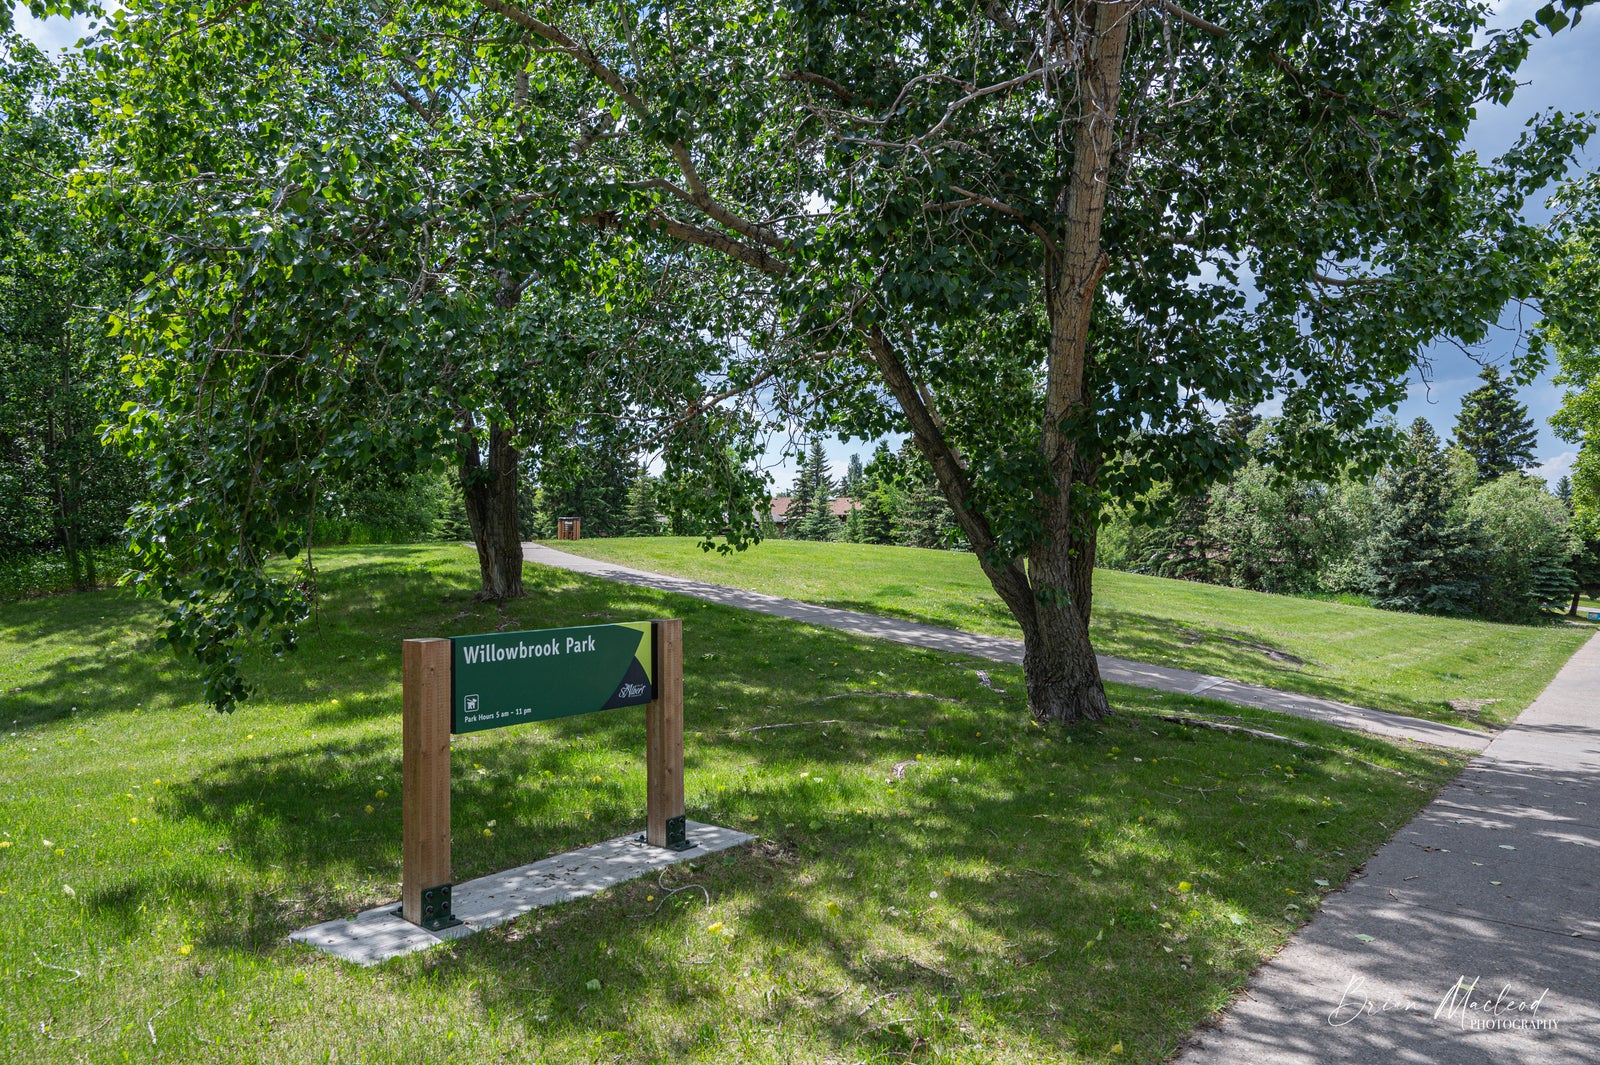 trees, green grass, path winds through Willowbrook Park